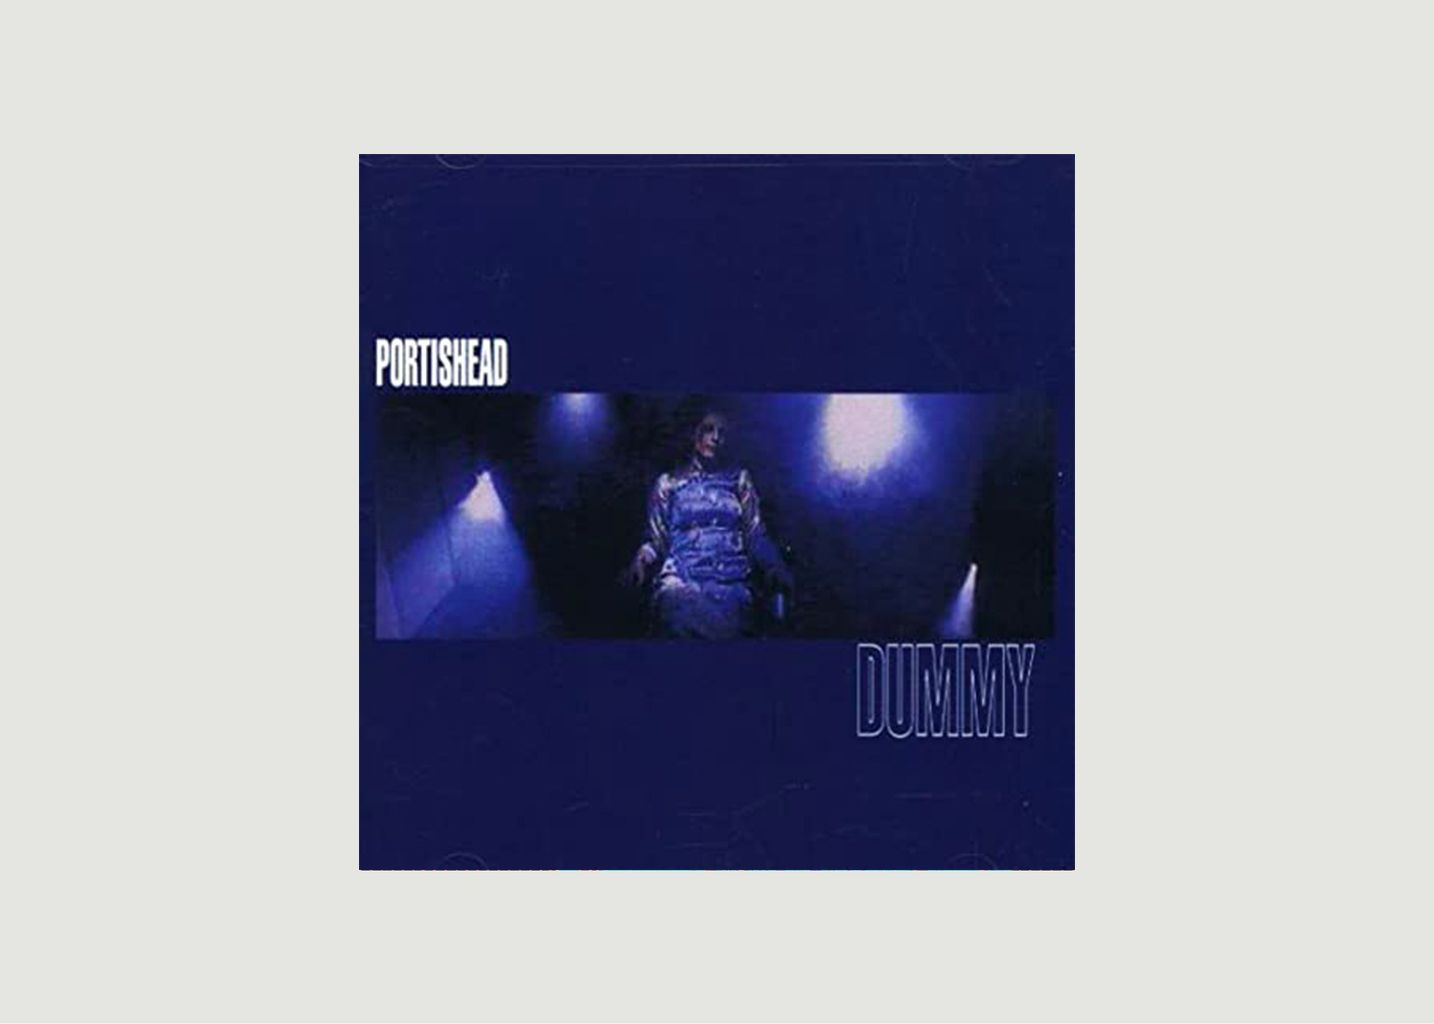 Vinyle Dummy Portishead - La vinyl-thèque idéale